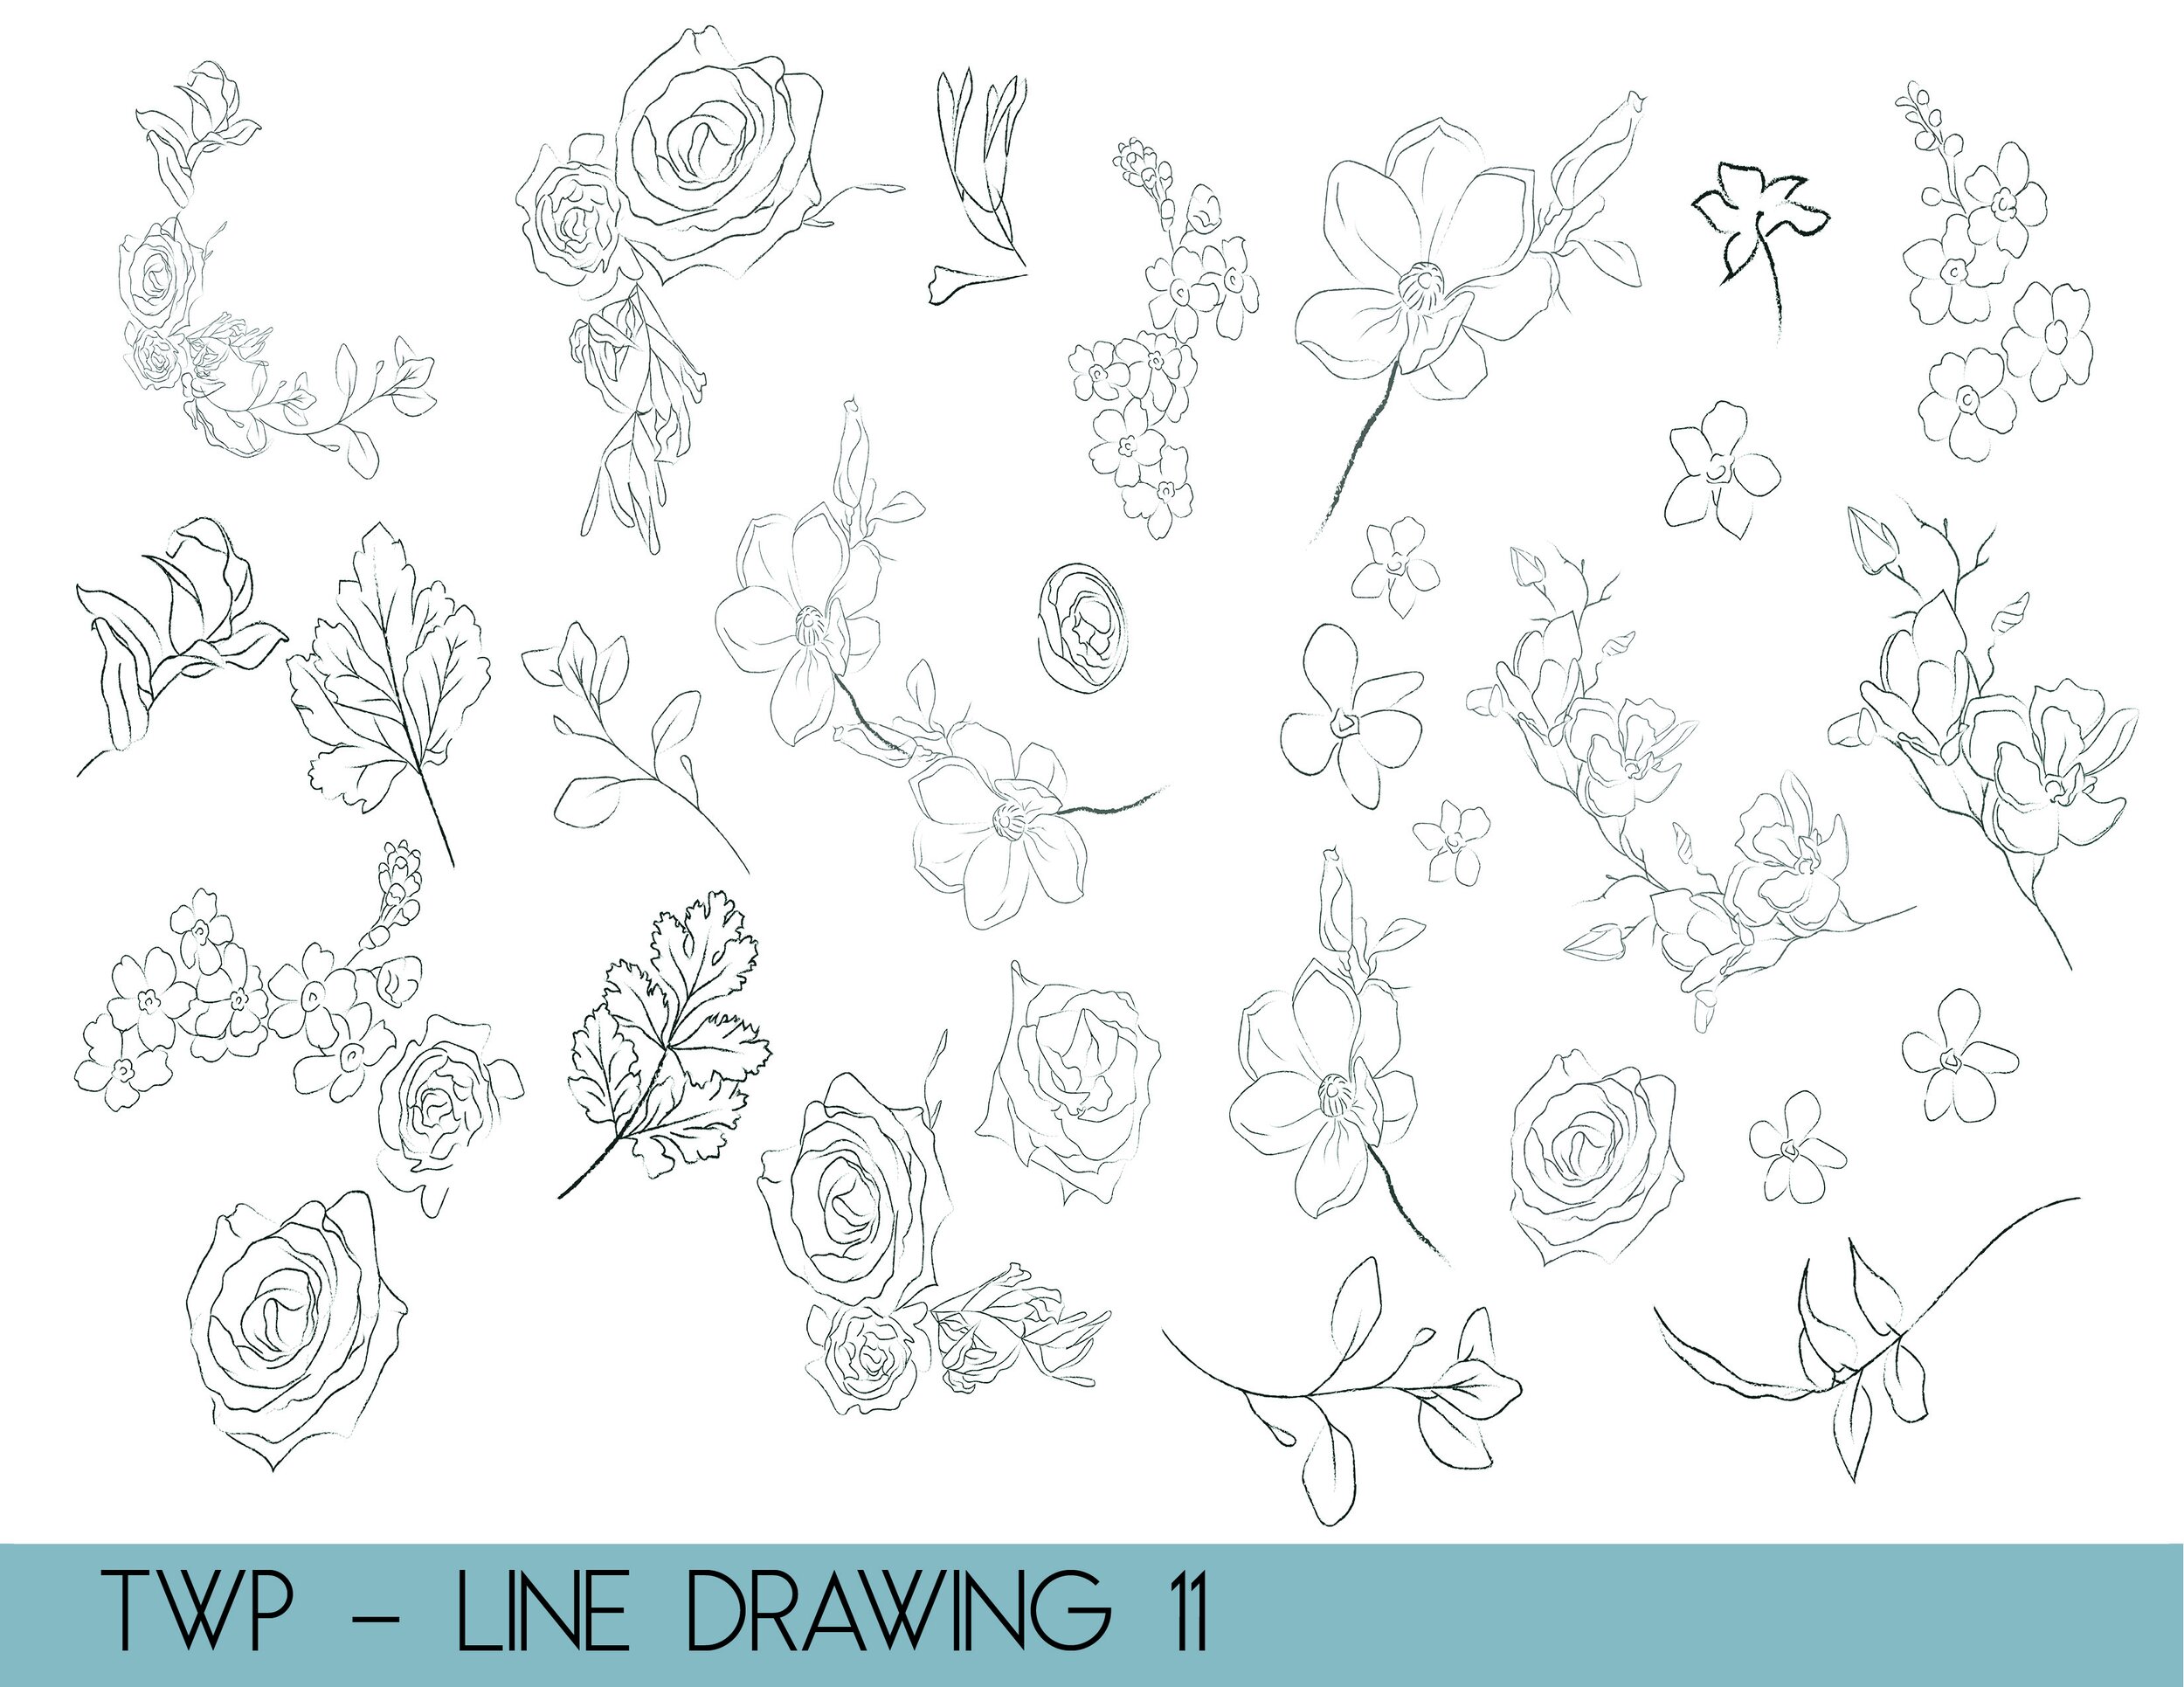 line drawings - website11.jpg